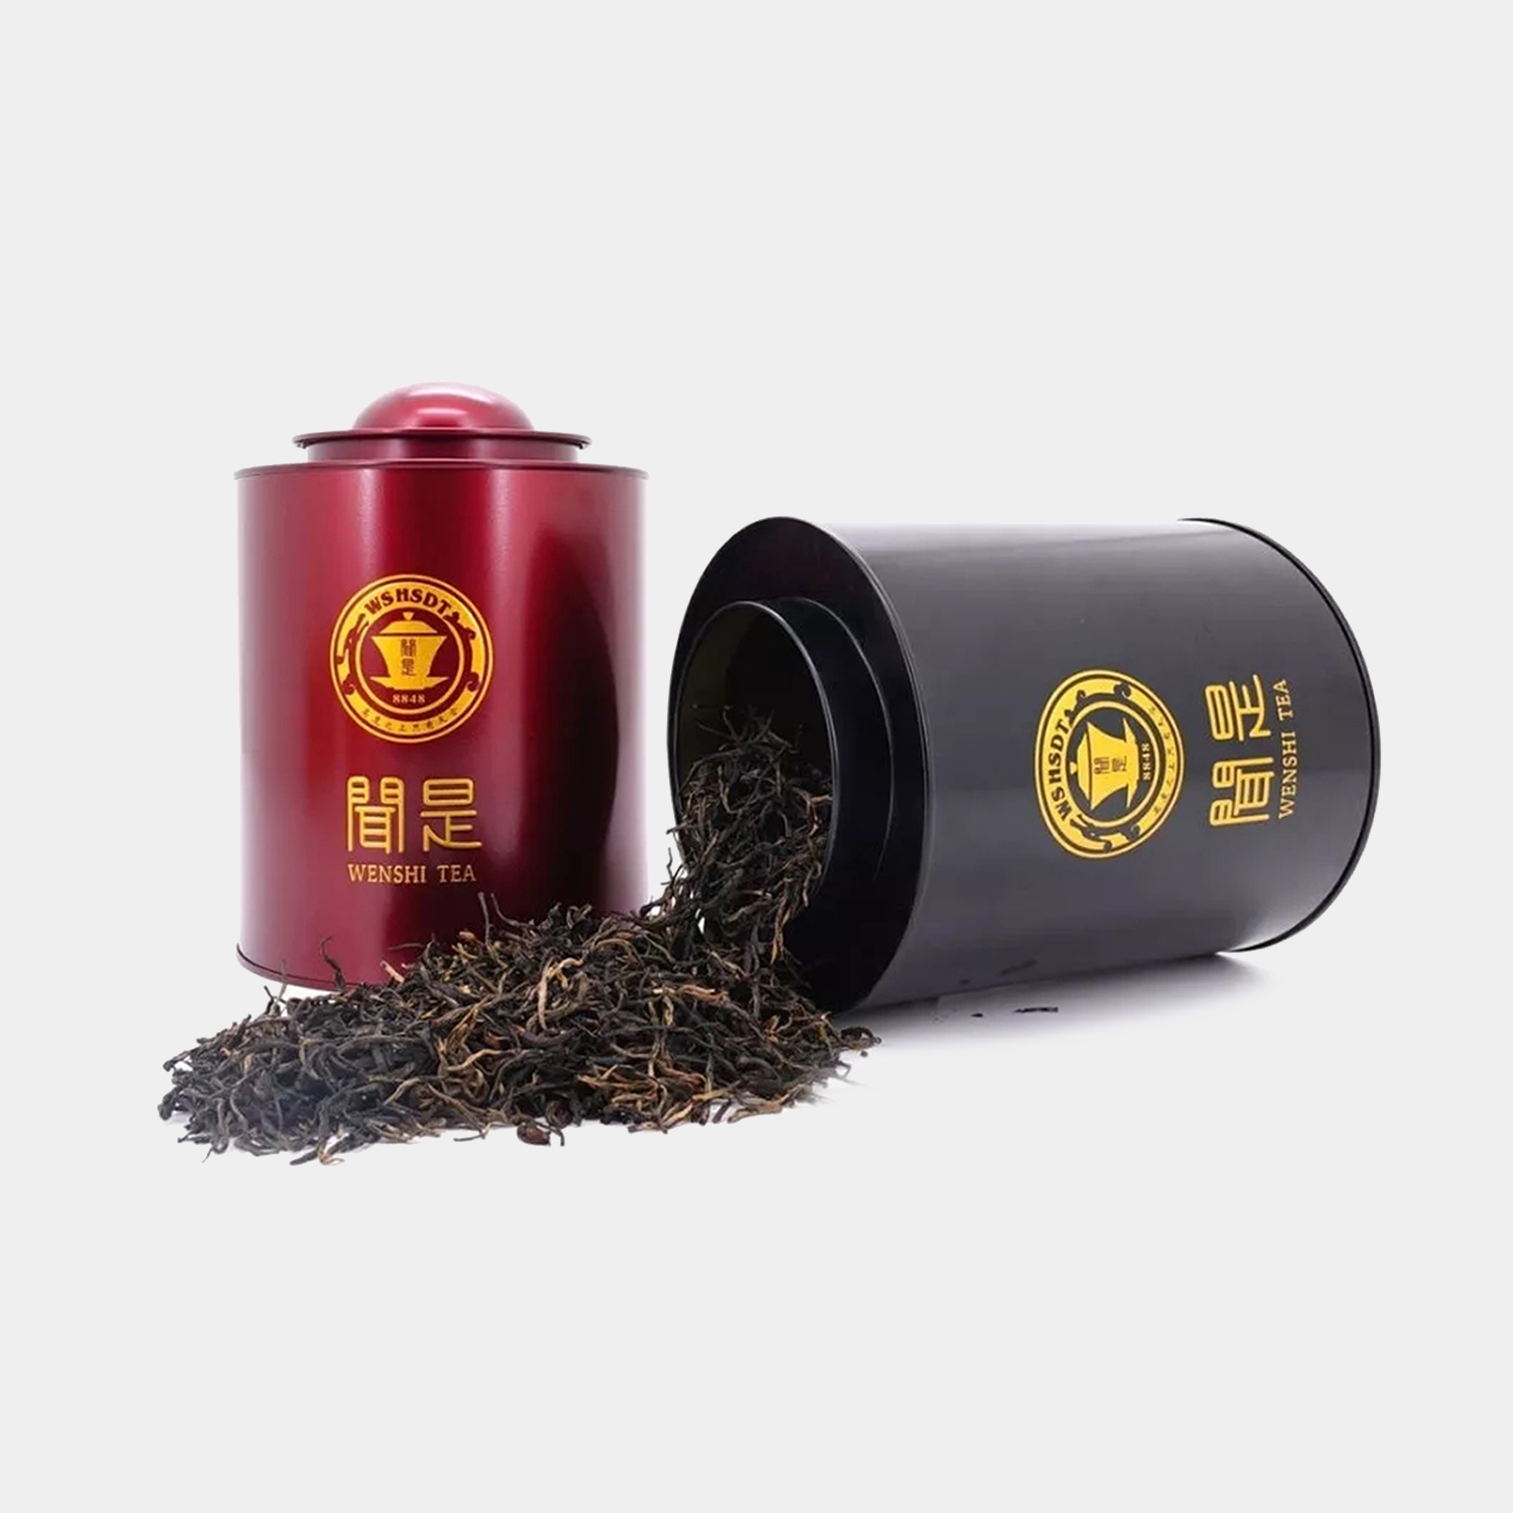 “网红茶”的出名让我们对西安茶叶包装设计有了更多的灵感